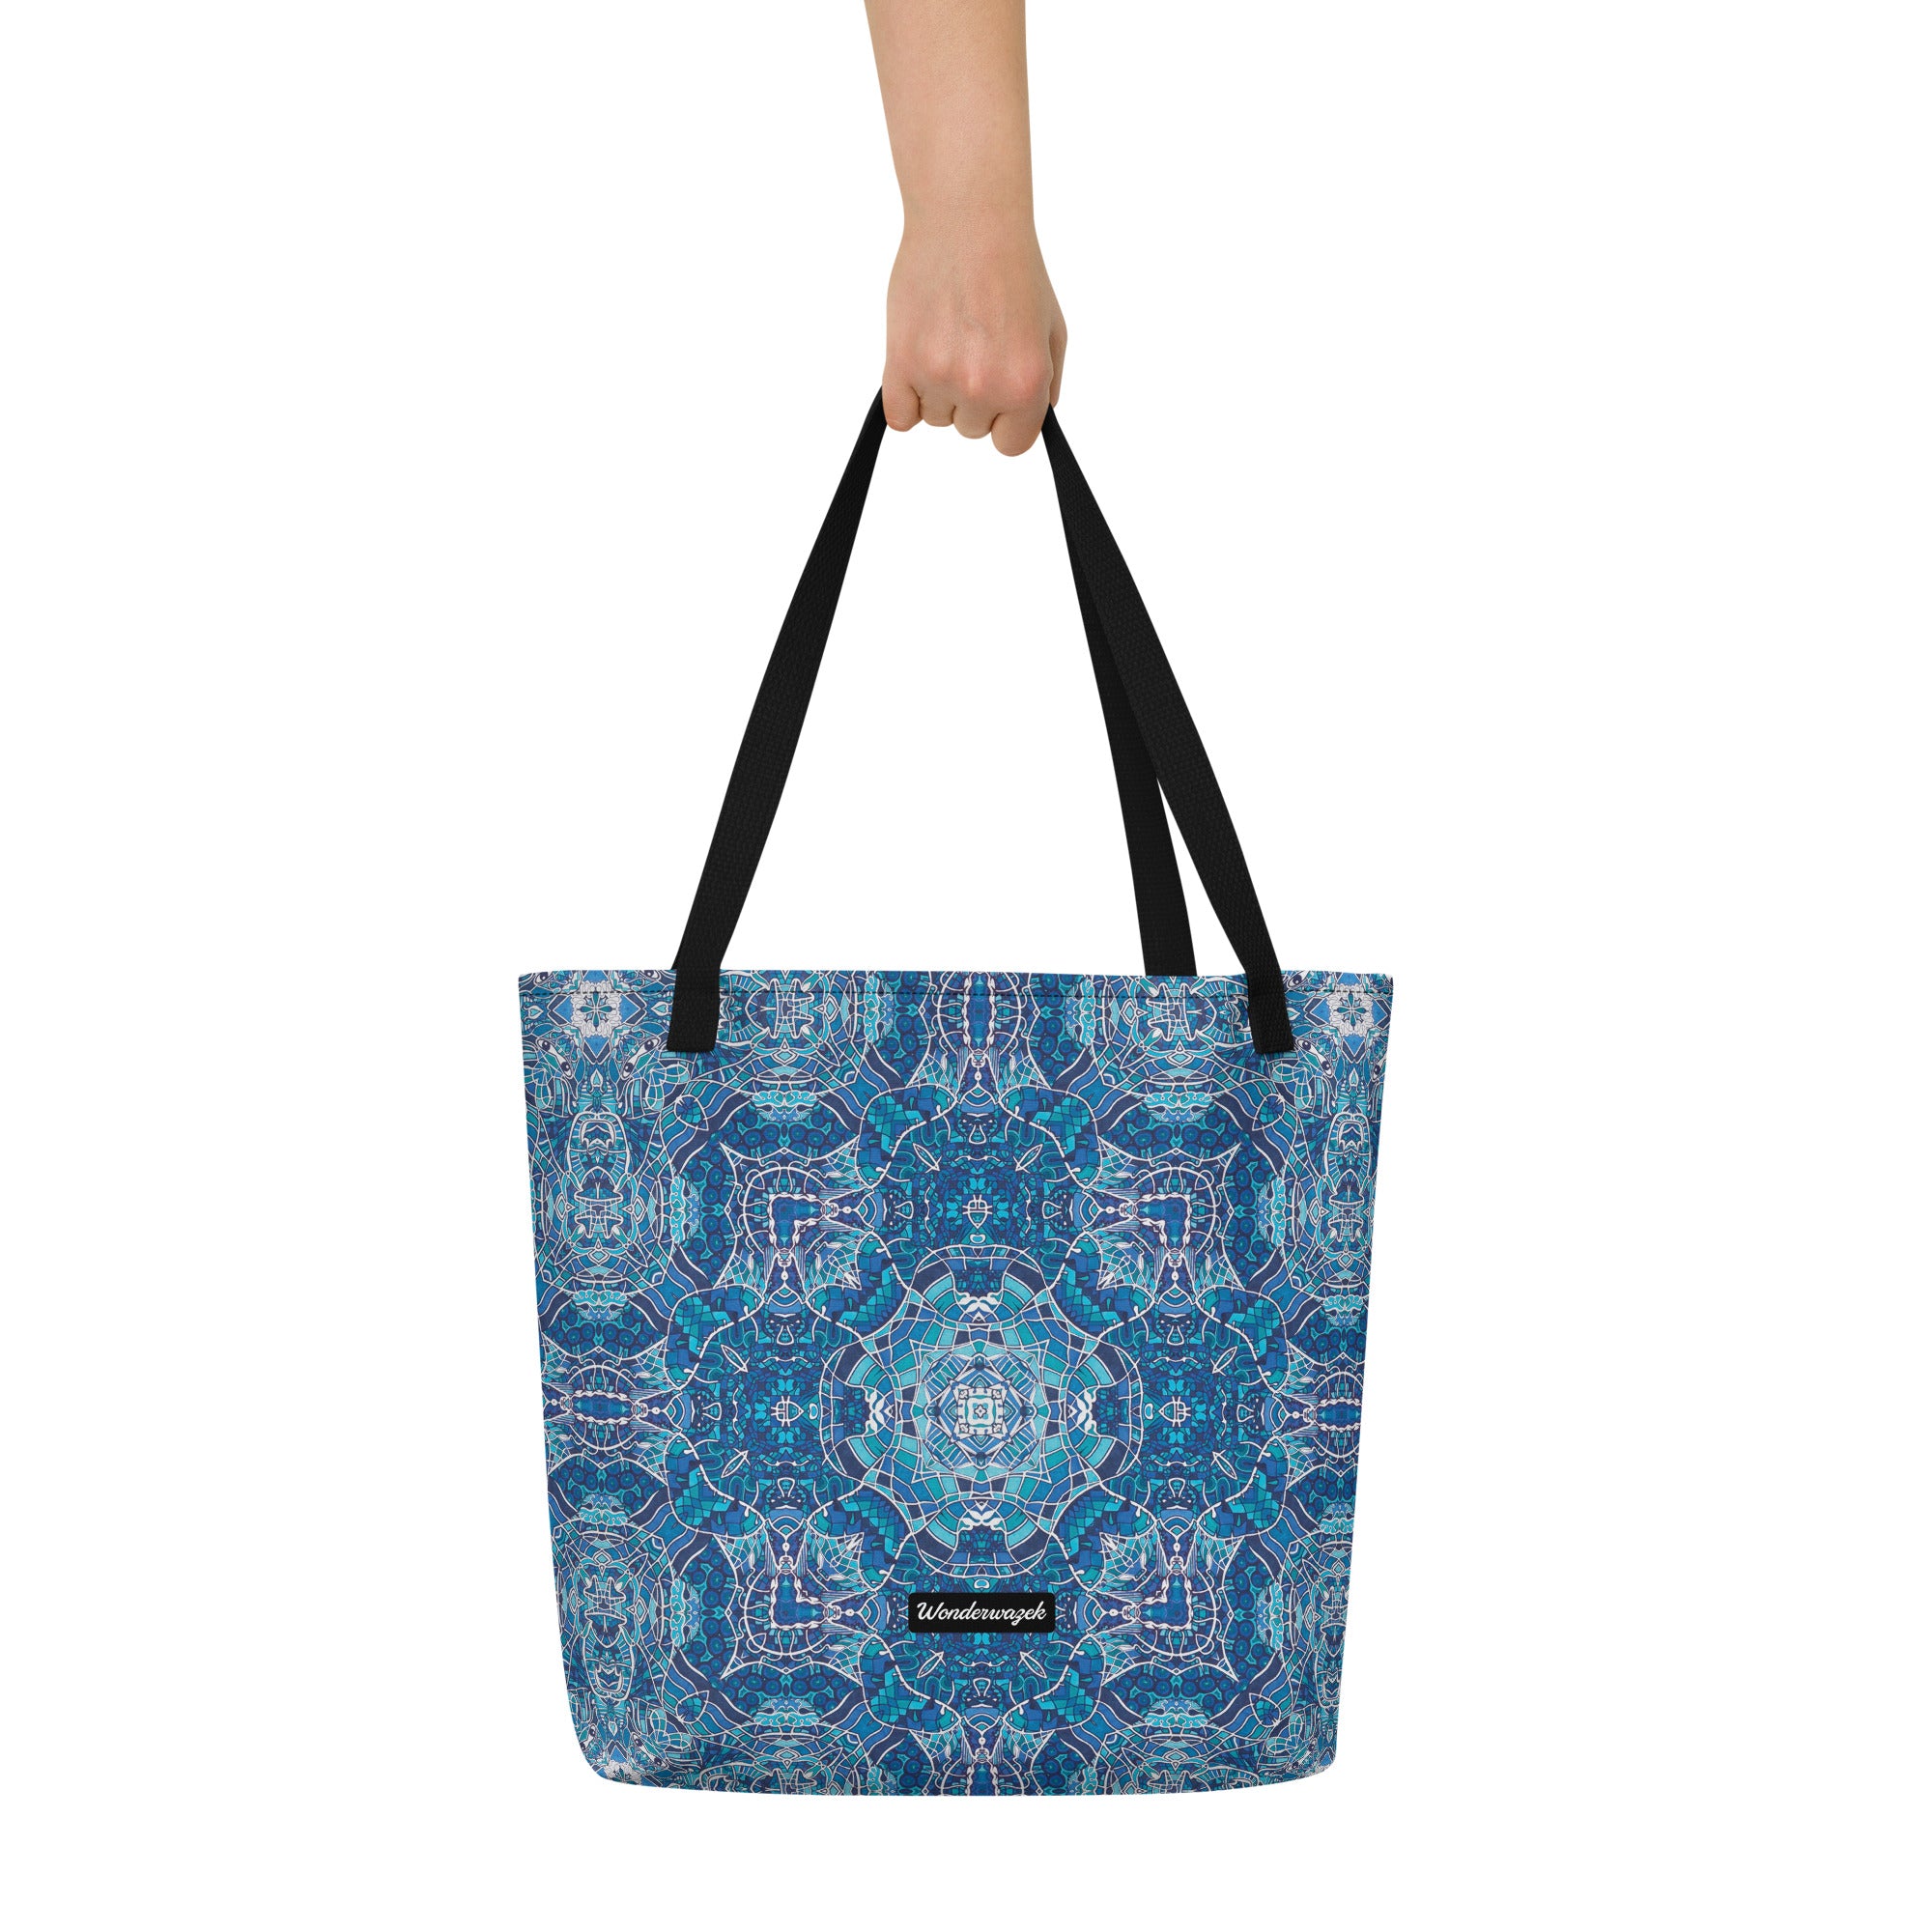 Strandtasche • Wassergeister – Kaleidoskop 1, blau, weiß - Wonderwazek